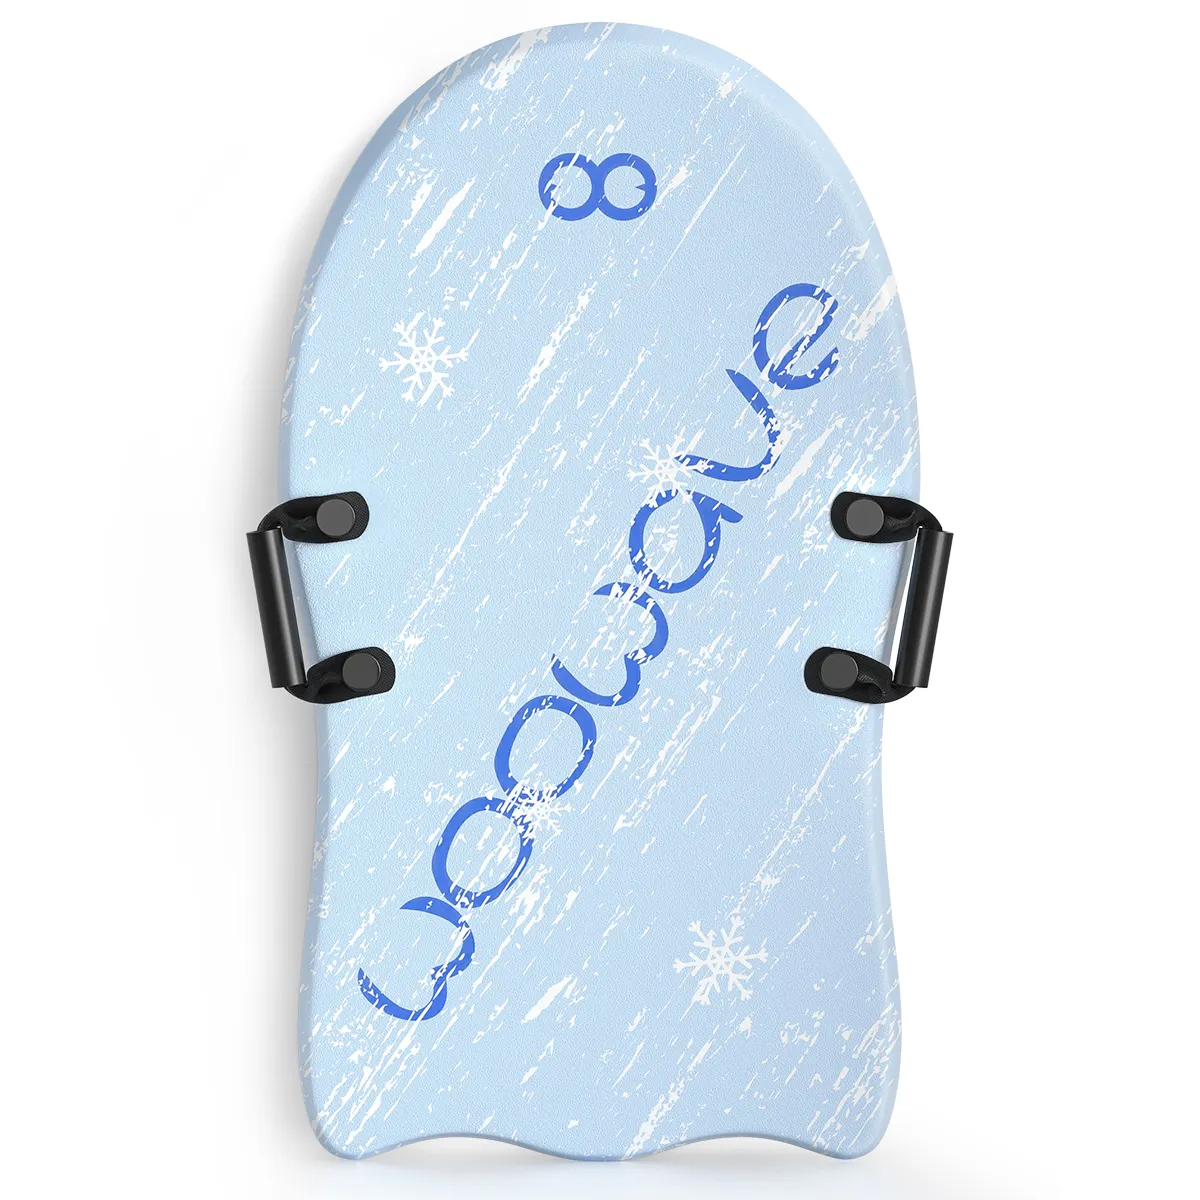 Woowave Snowboard trenó de neve de espuma para crianças e Adultos com material confortável